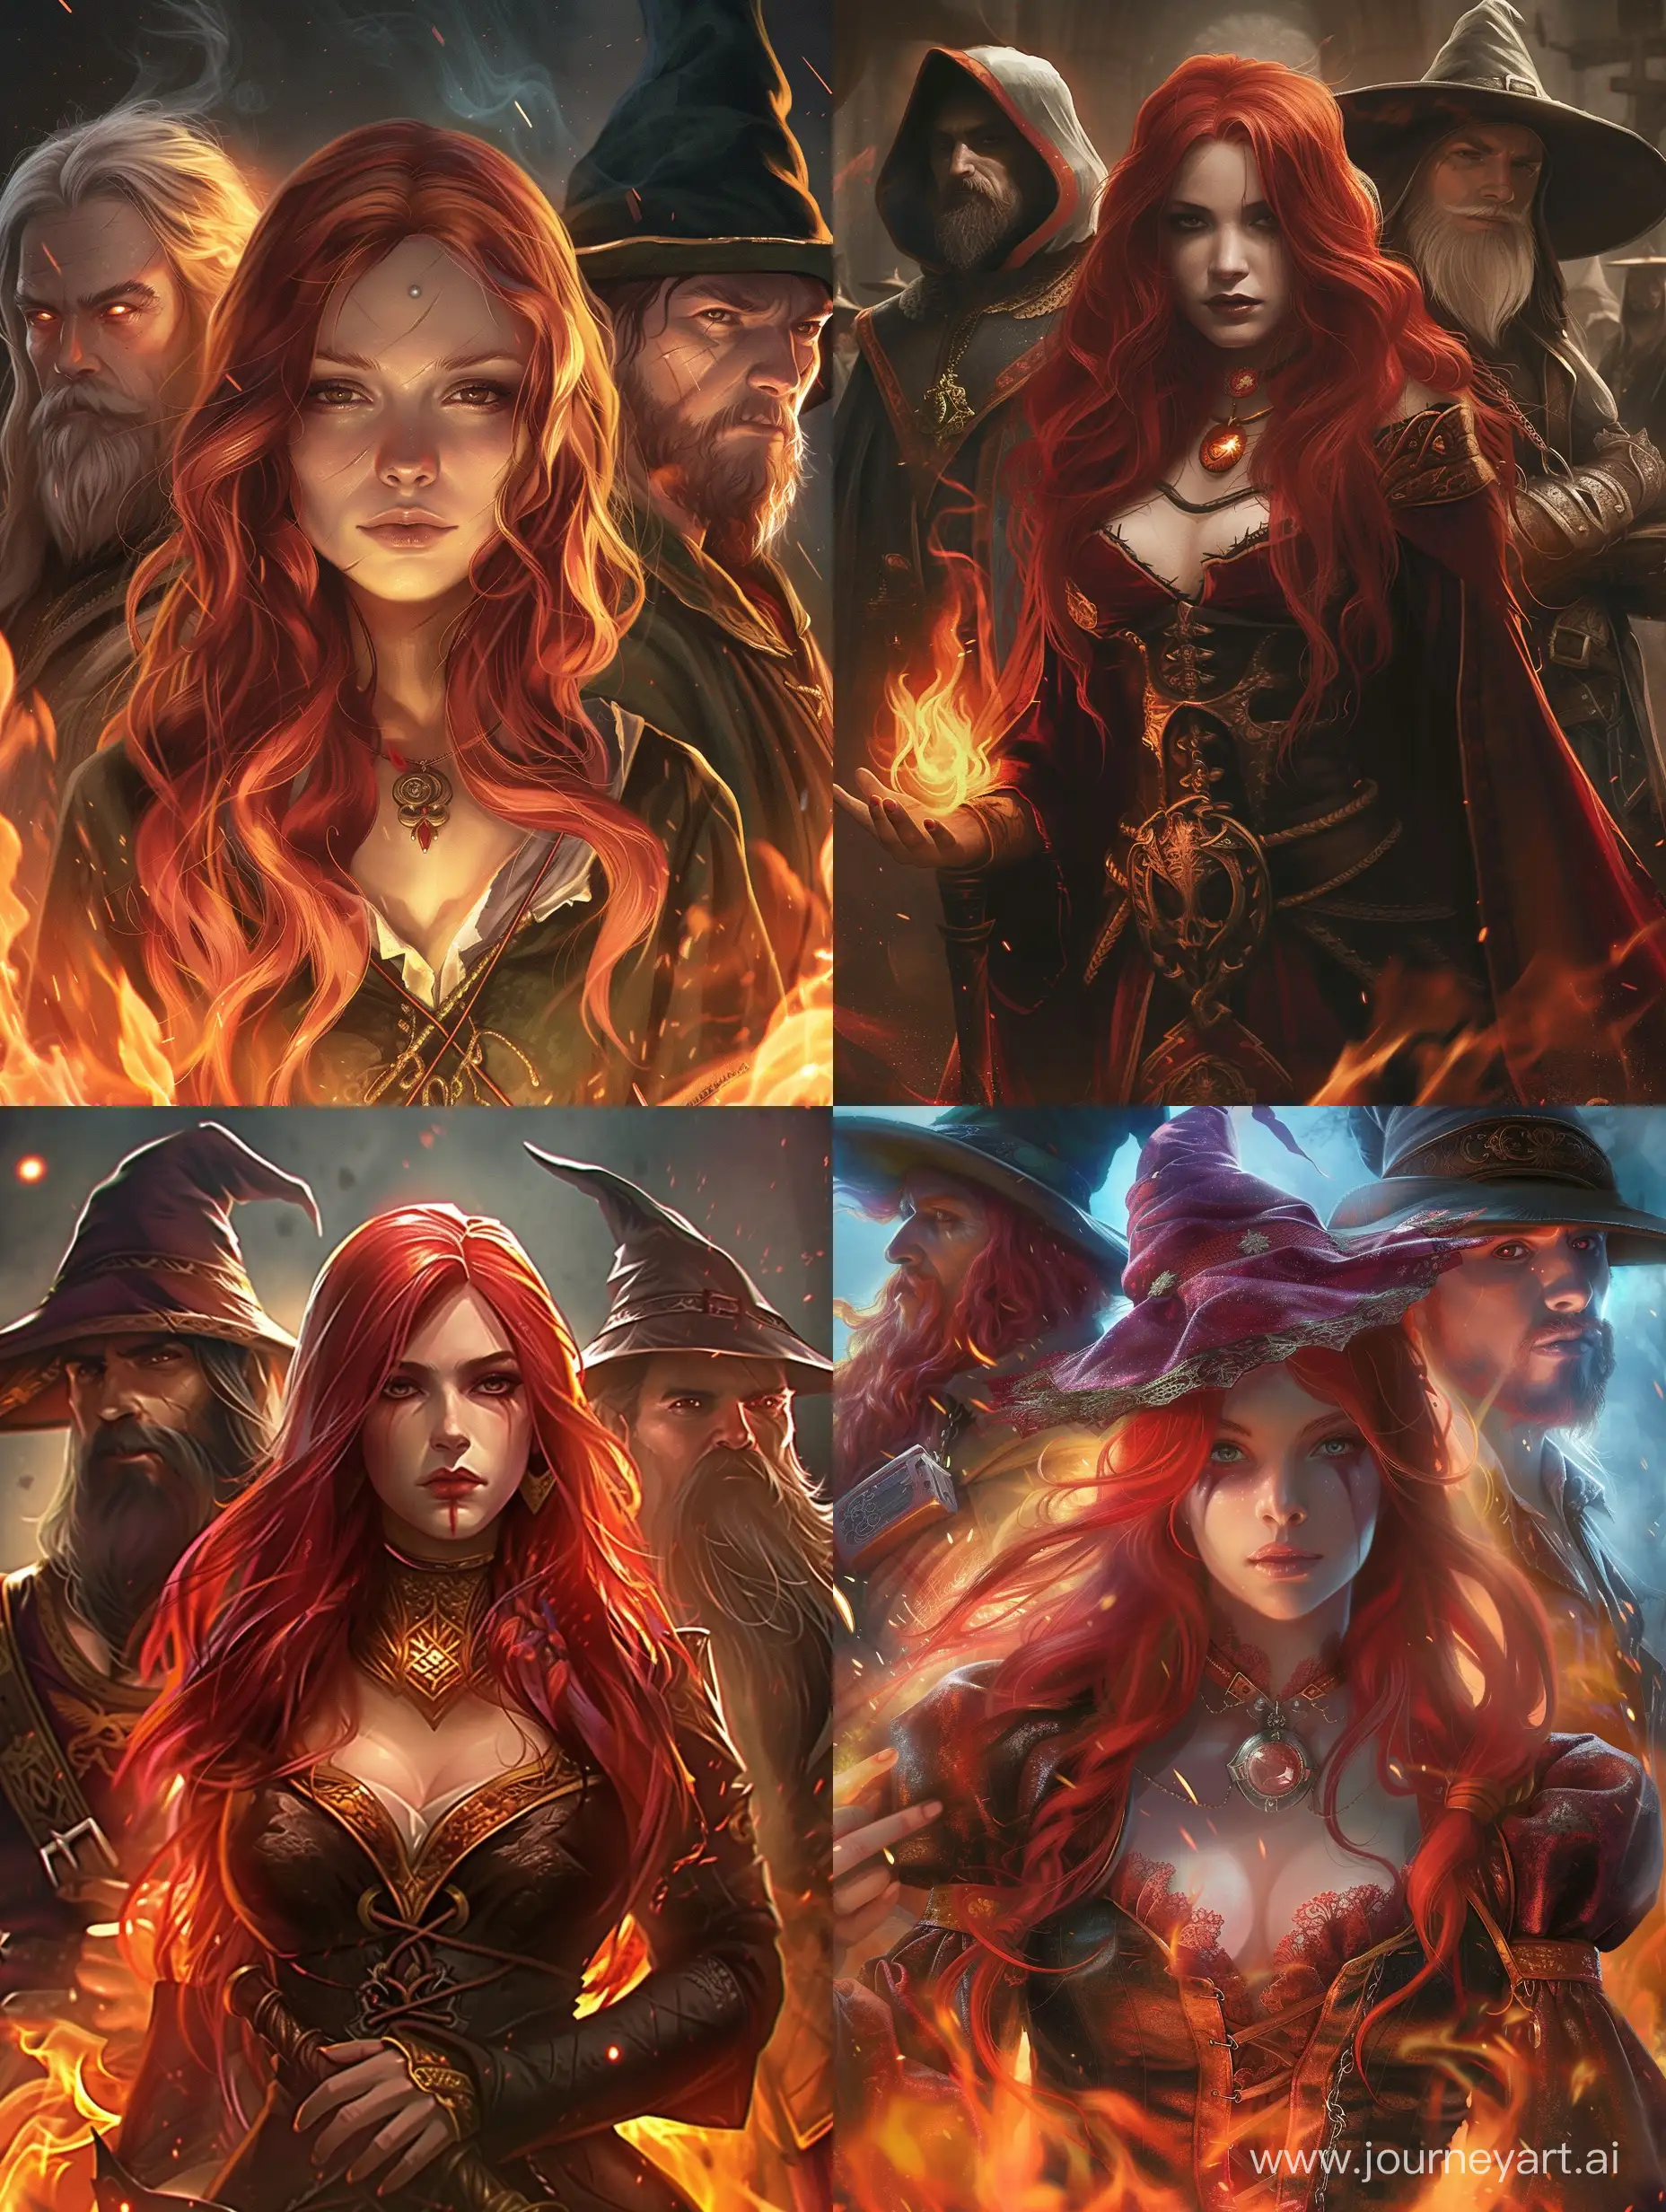 Fantasy, romance девушка с рыжыми волосами и двое мужчин магов, огненная страсть 